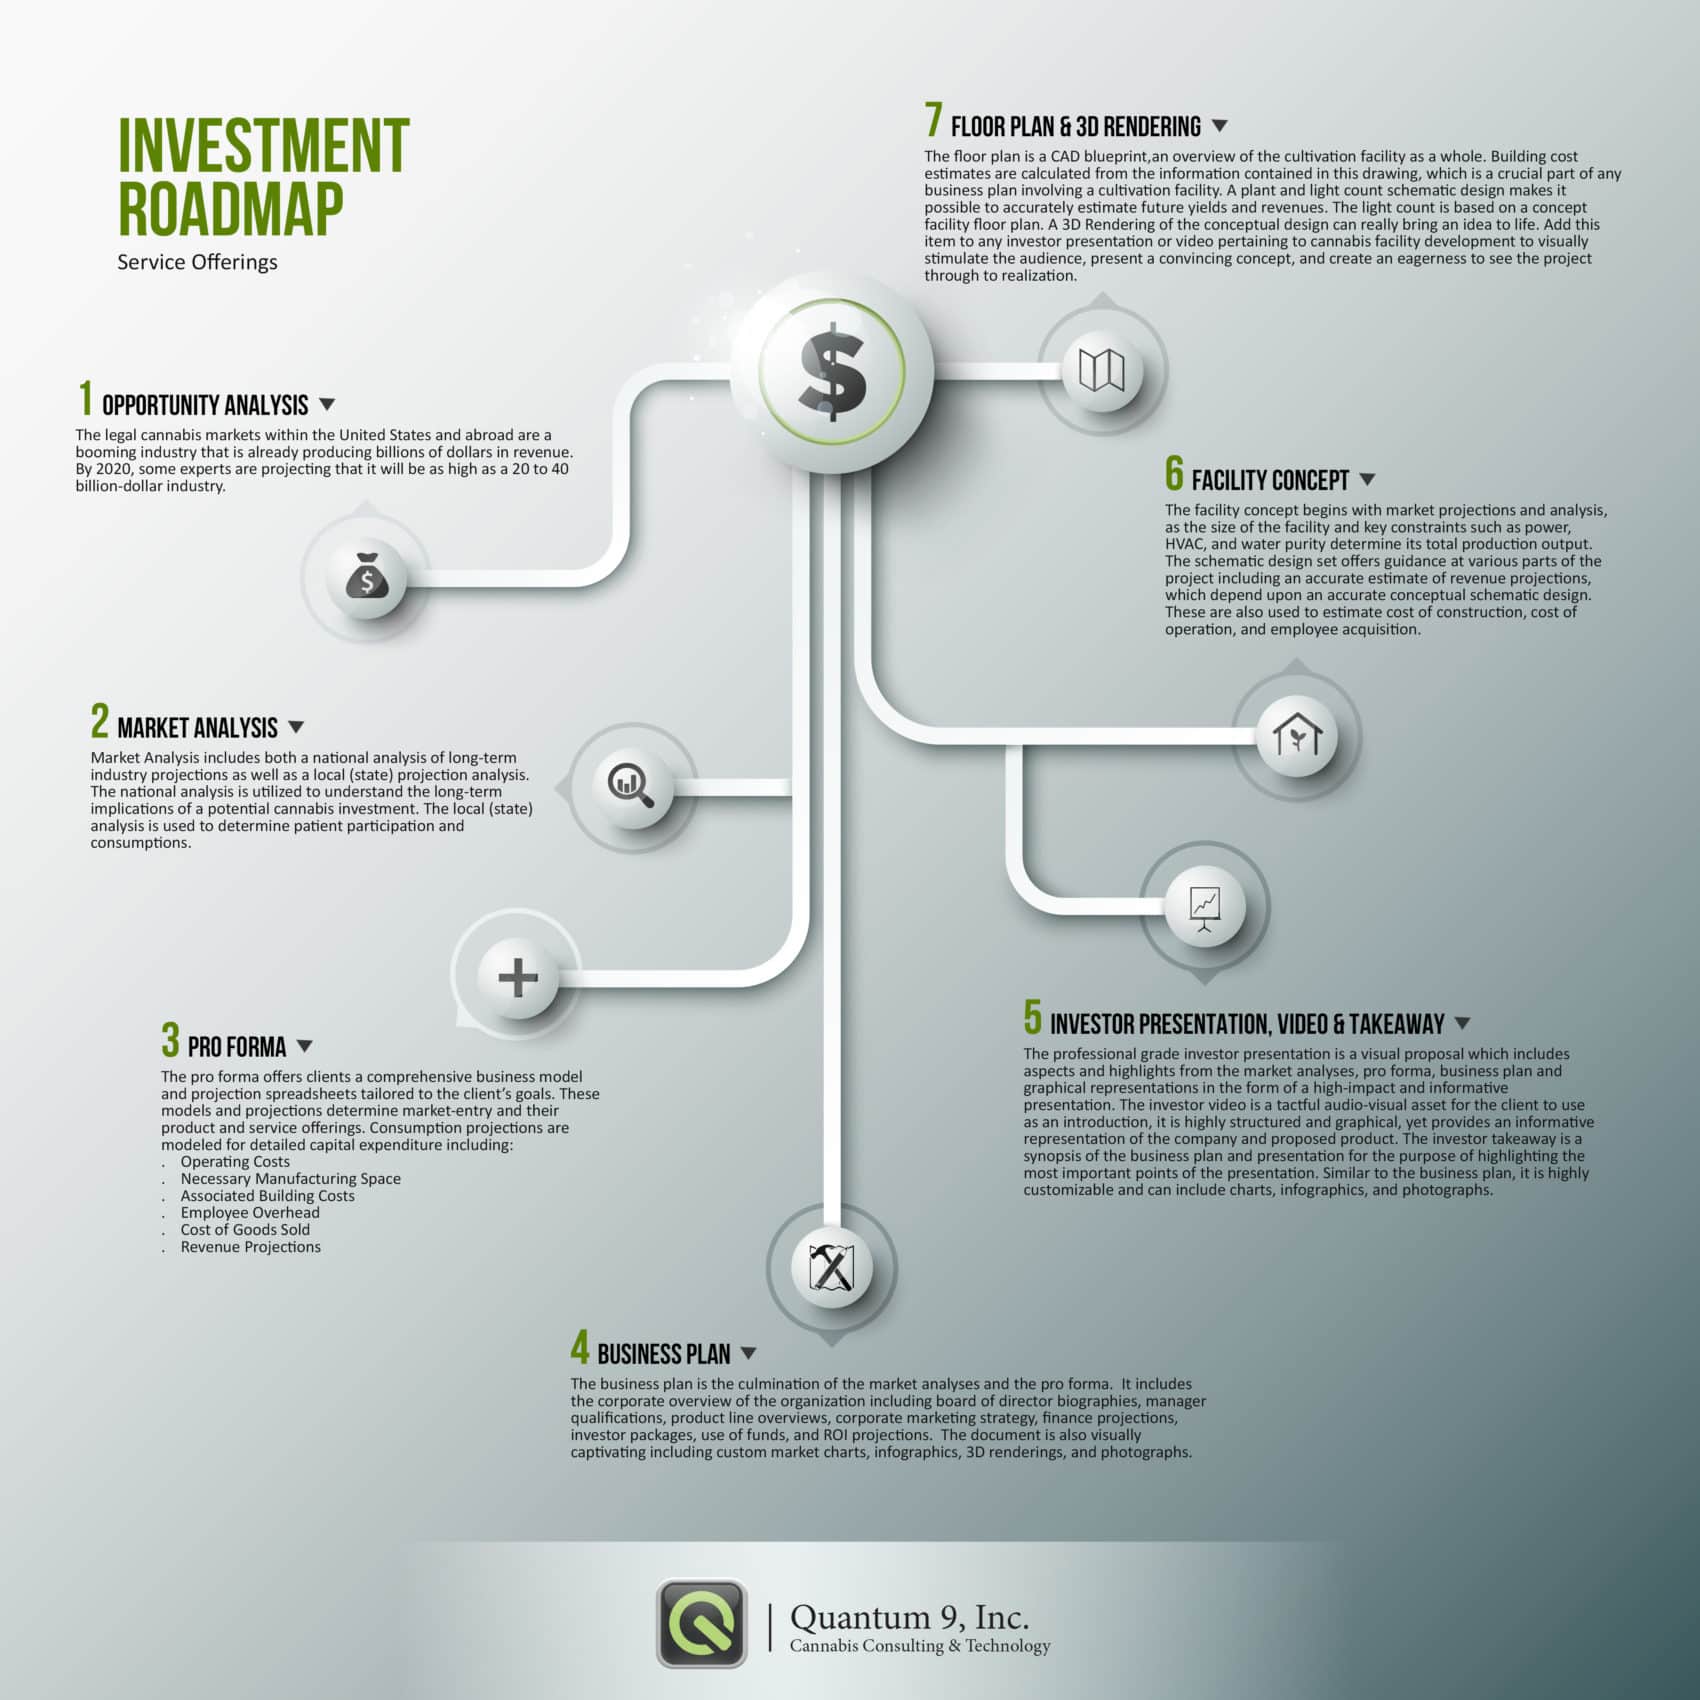 Quantum 9 Investment Roadmap